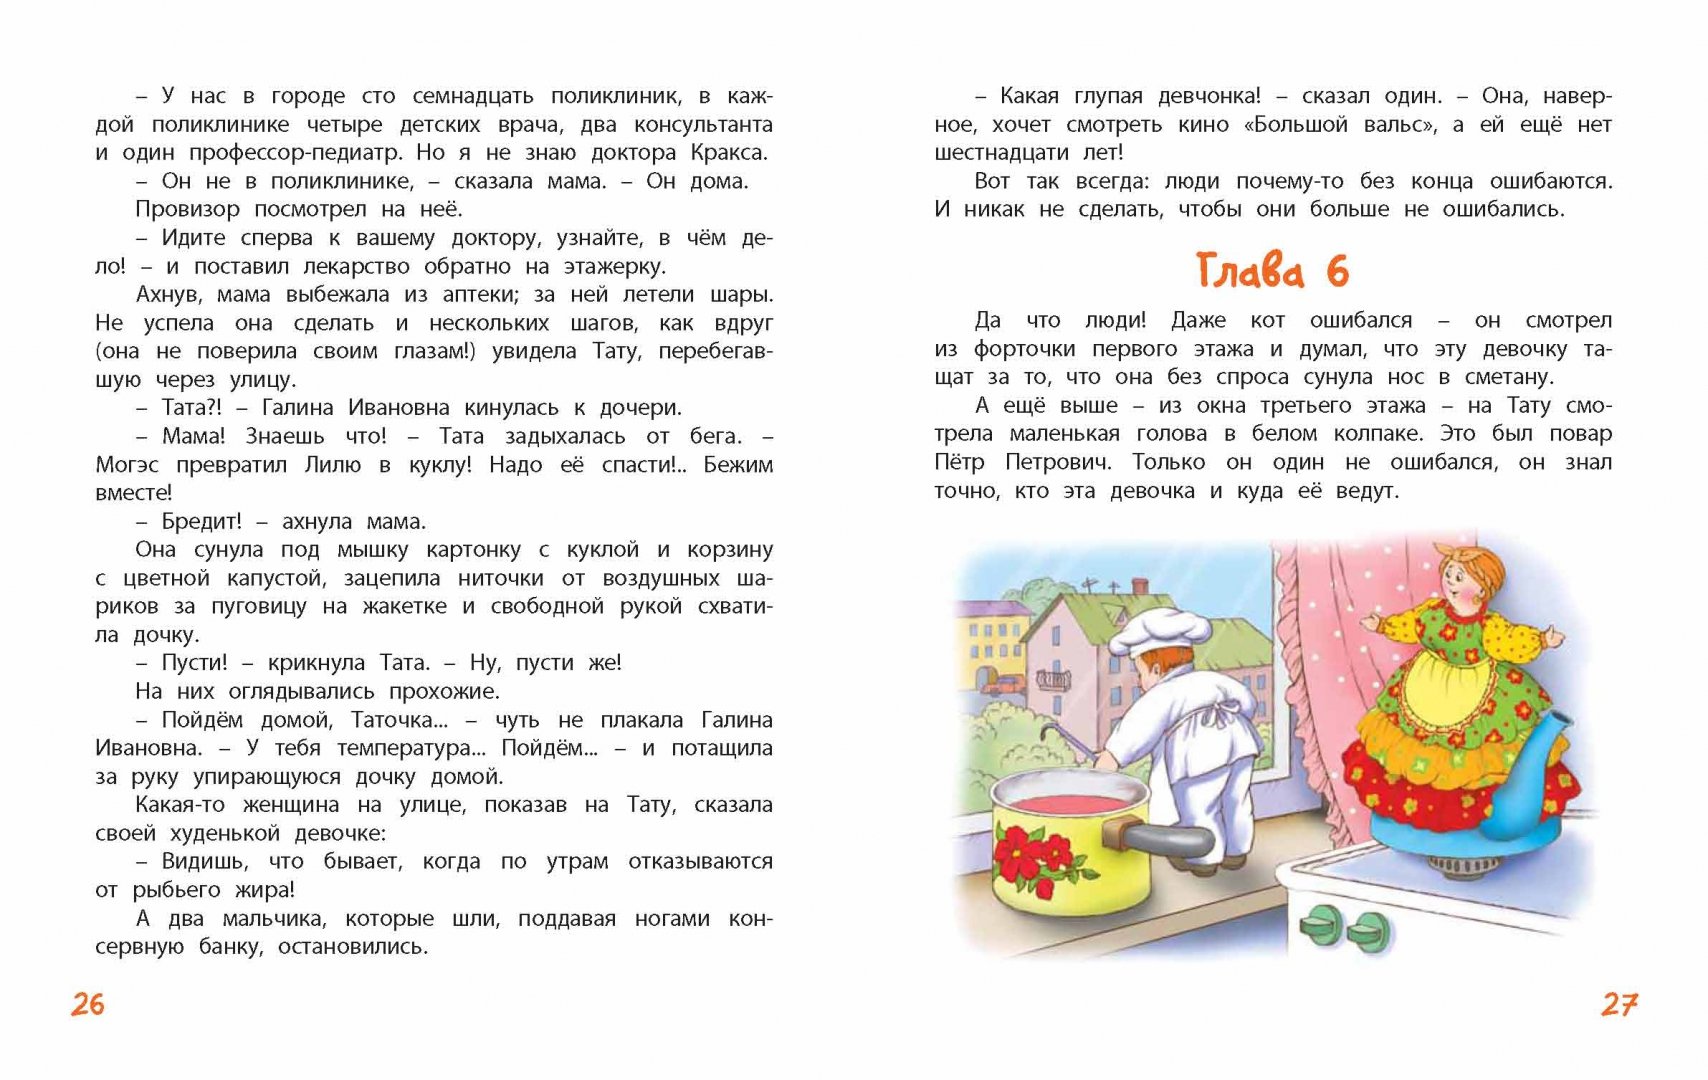 Иллюстрация 26 из 26 для Кукольная комедия - Виткович, Ягдфельд | Лабиринт - книги. Источник: Лабиринт